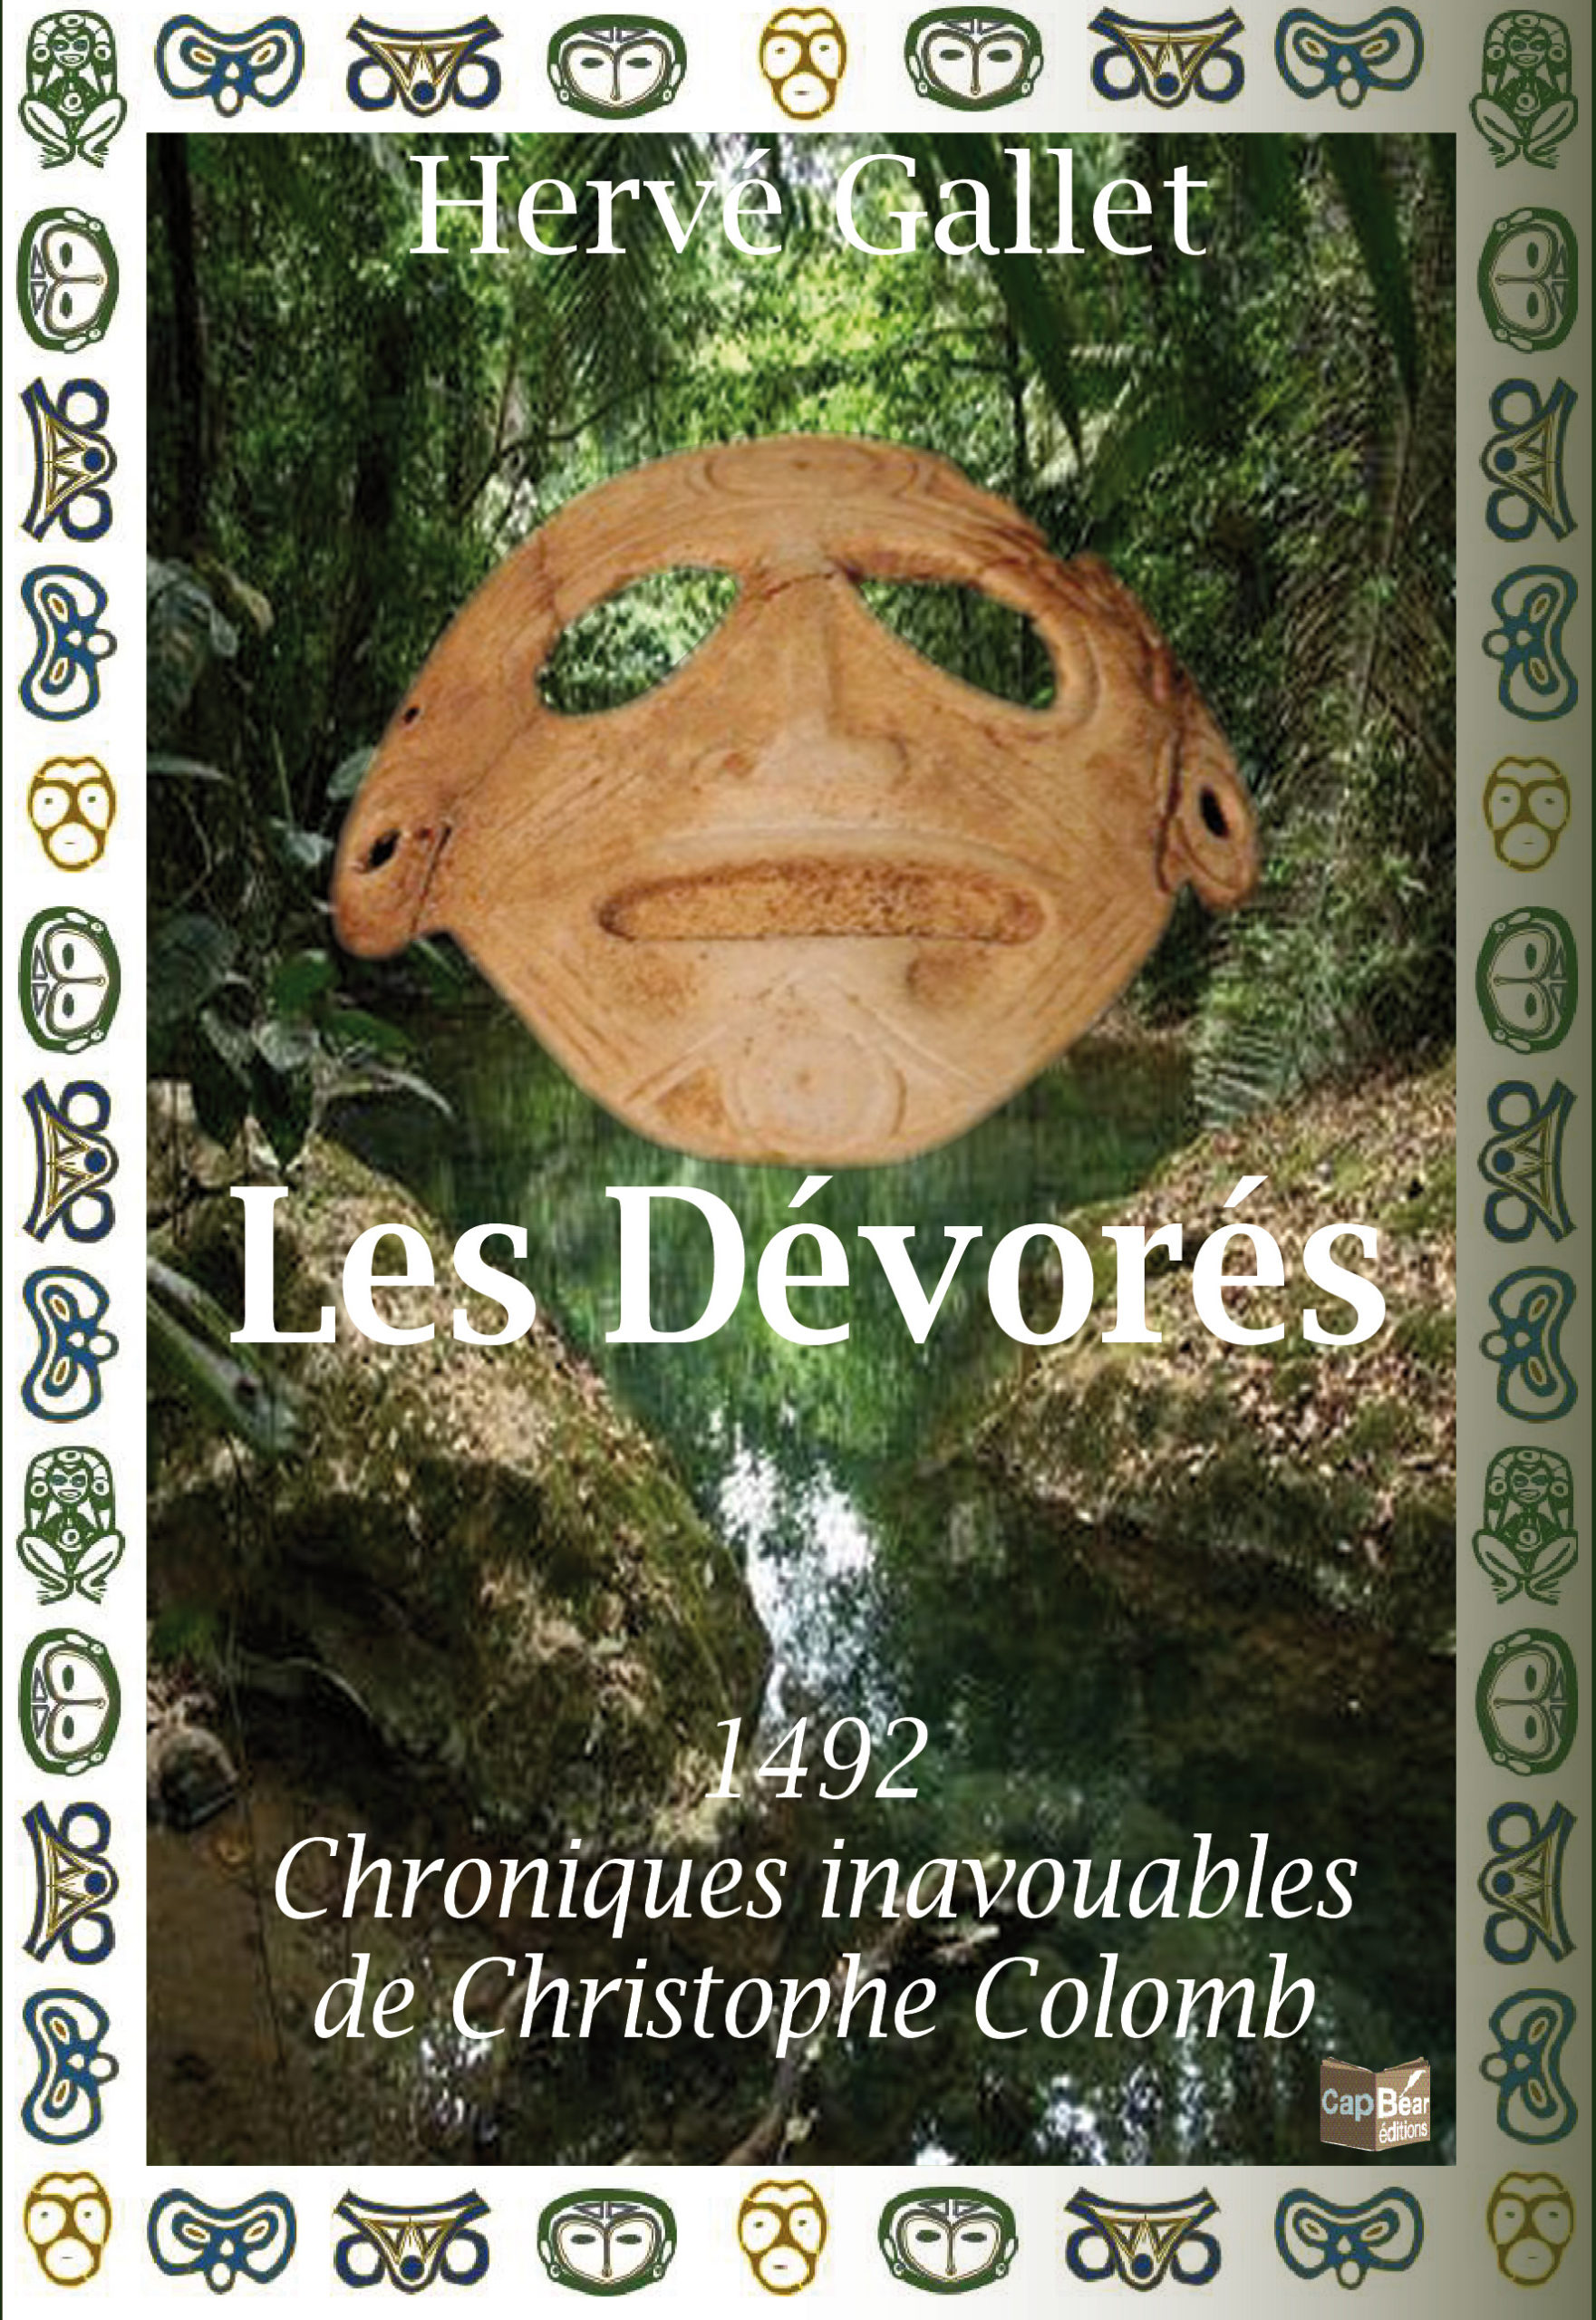 Les Dévorés,1492 Chroniques inavouables de Christophe Colomb.